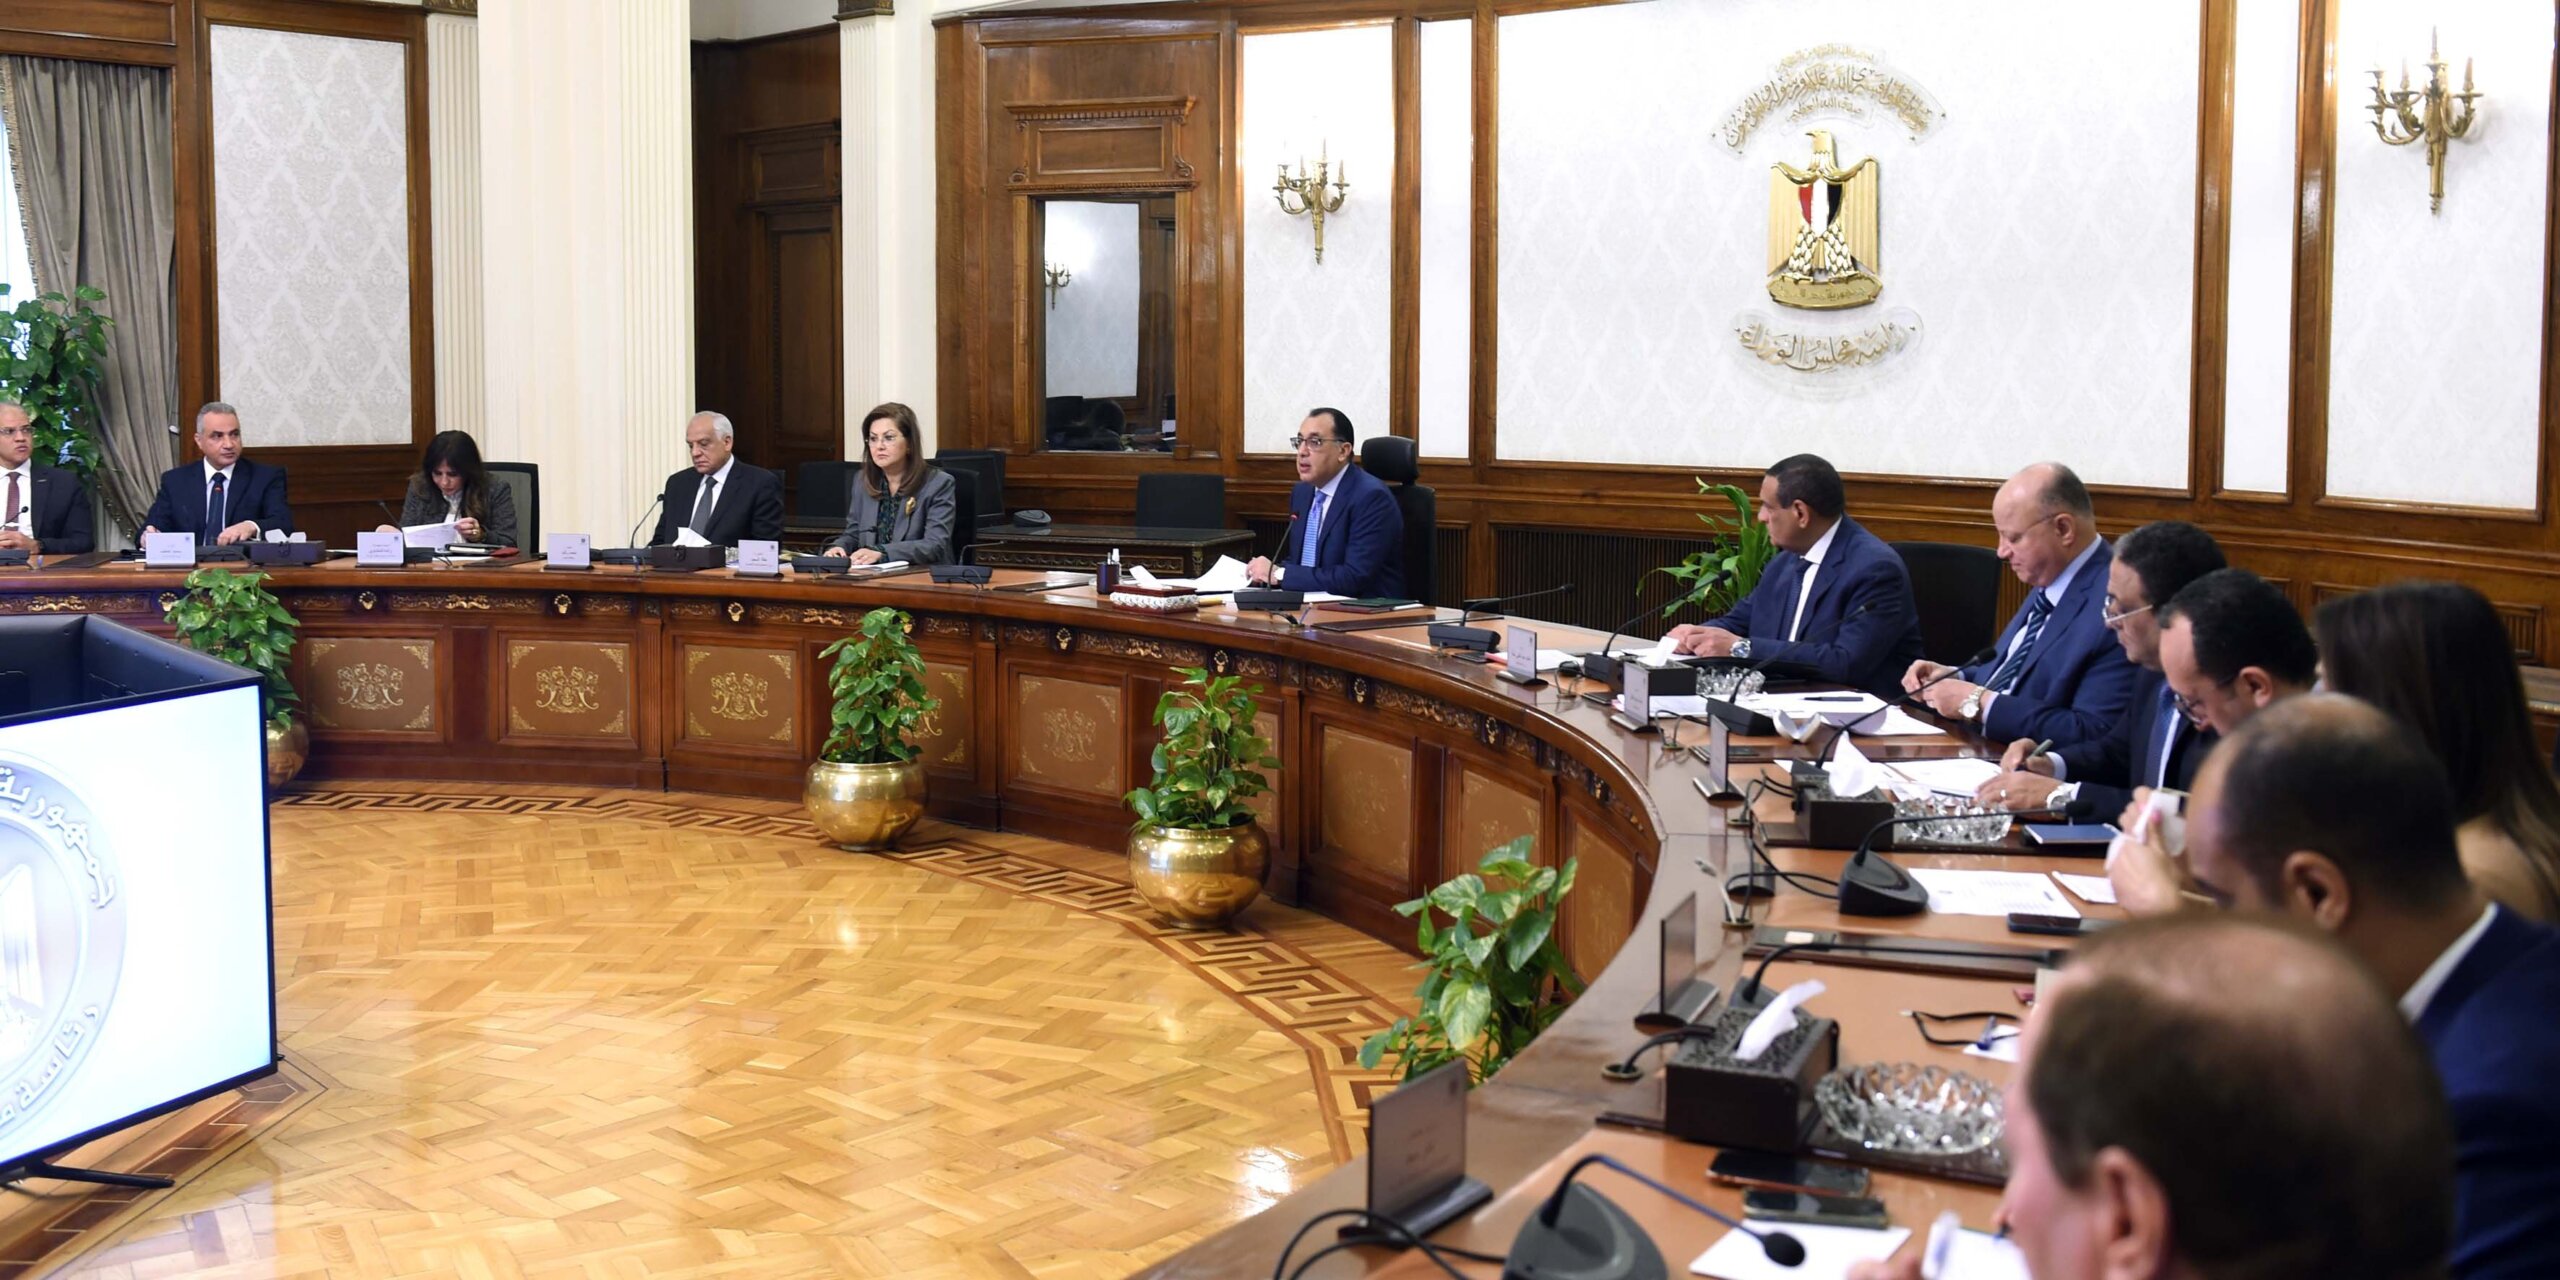 «معلومات الوزراء» يجري استطلاعًا حول إجراءات وحوافز دعم وتحسين بيئة الاستثمار بمصر